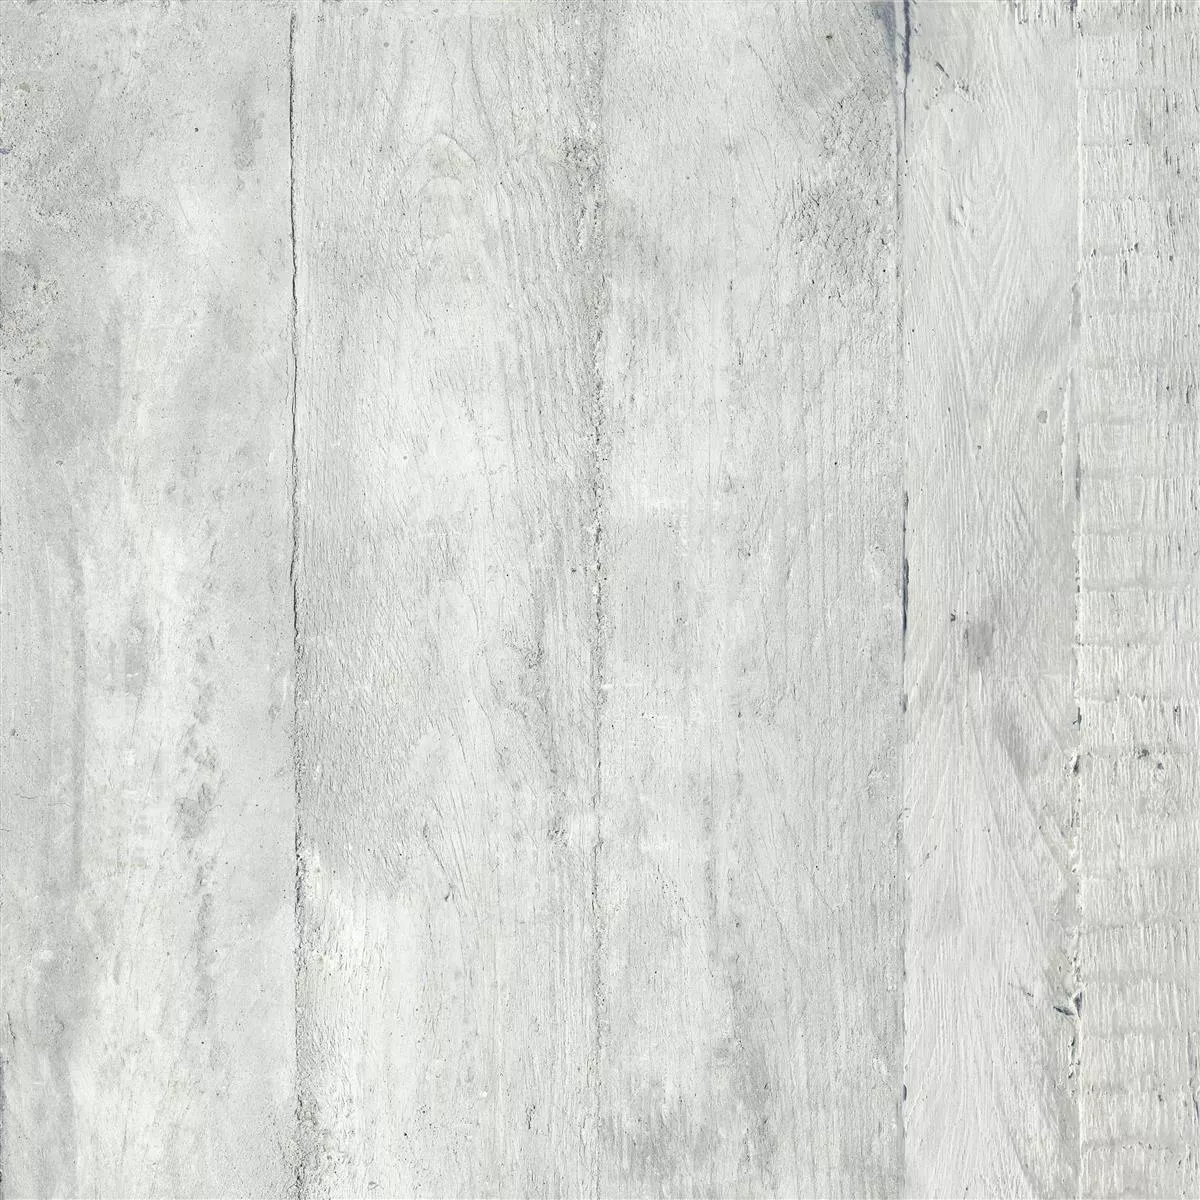 Sample Floor Tiles Gorki Wood Optic 60x60cm Glazed Grey